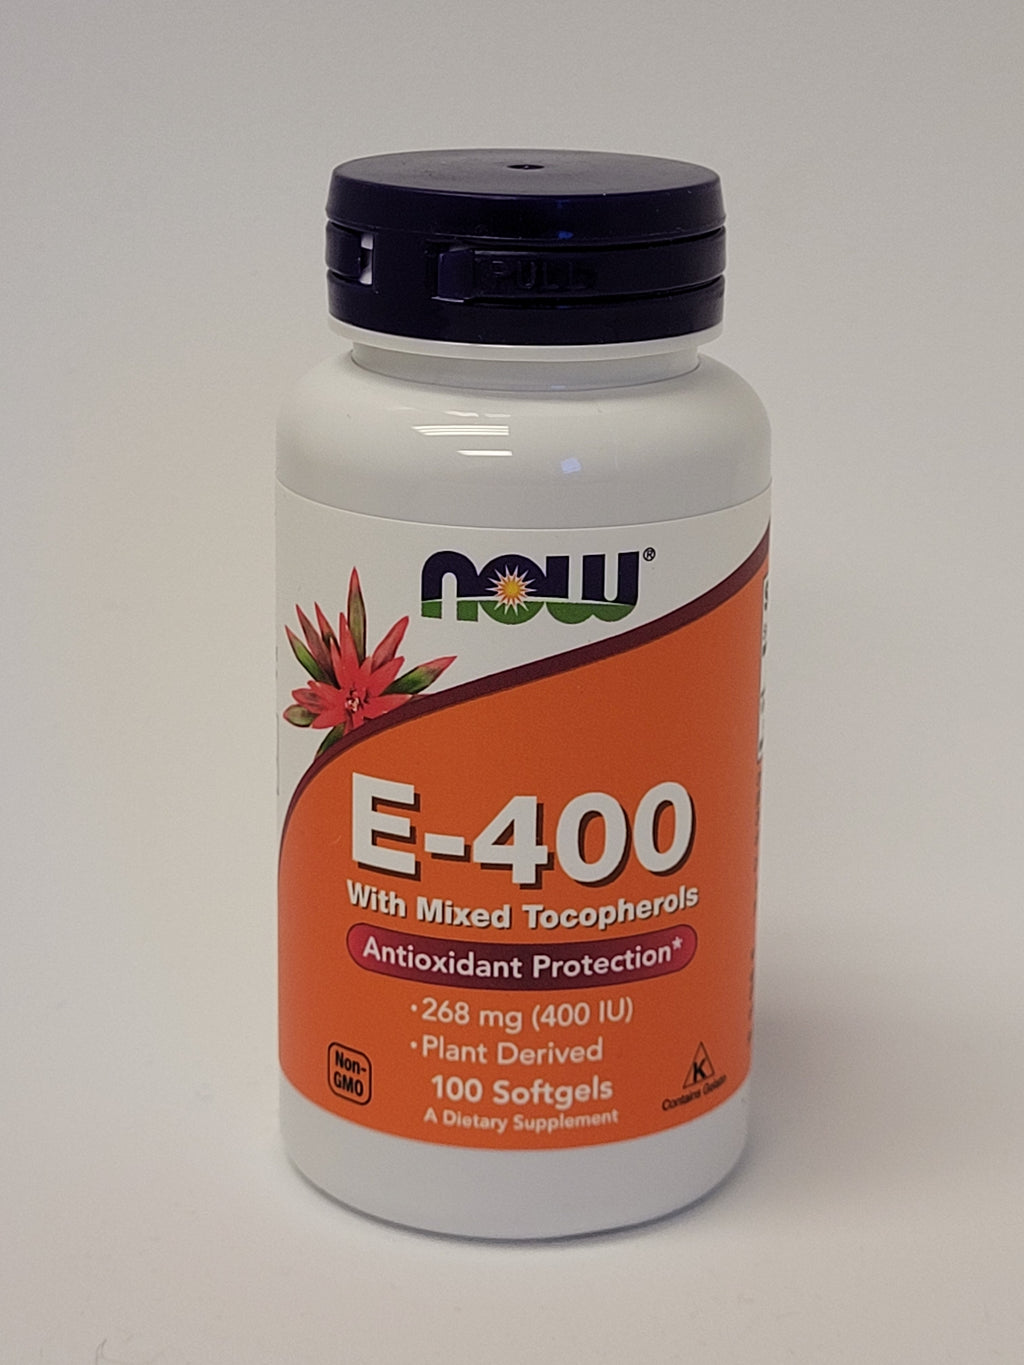 Vitamin E-400 with Mixed Tocopherols